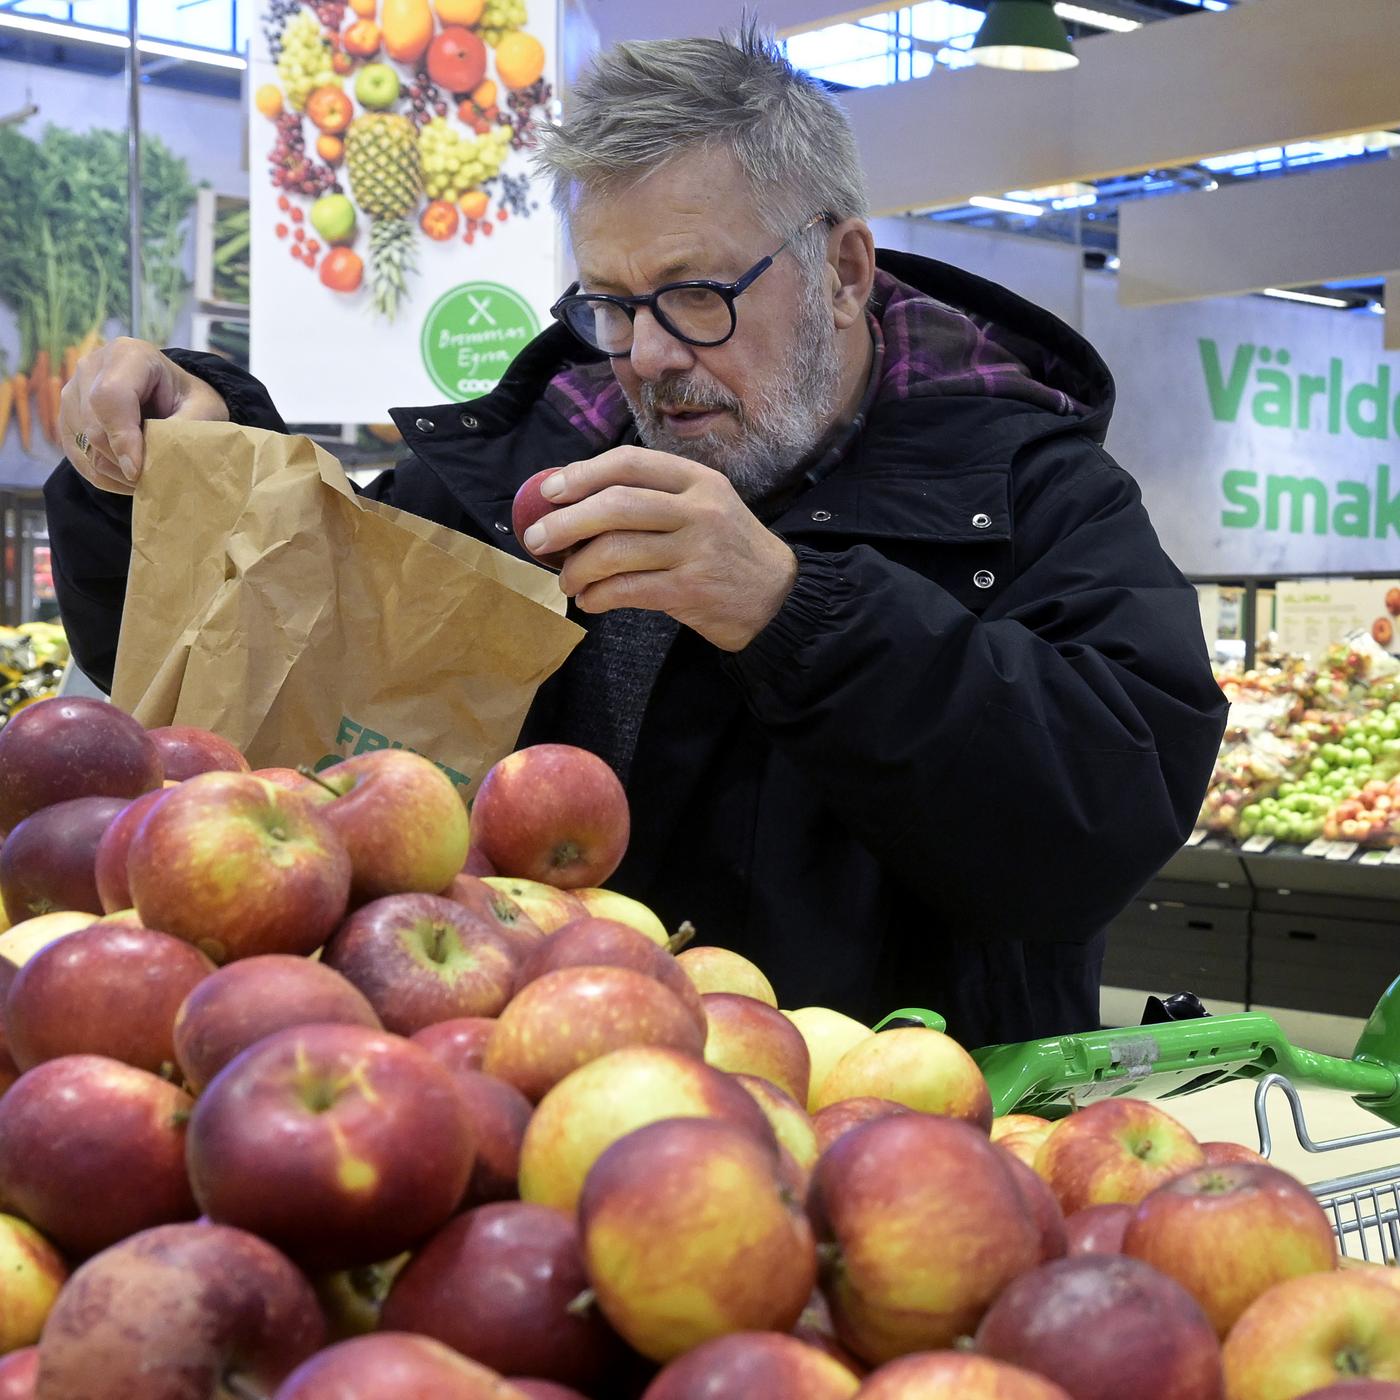 STOCKHOLM 20221110
Pensionär handlar mat på livsmedelsaffären COOP.
Foto: Janerik Henriksson / TT / kod 10010
Frukt och grönt har stigit markant i pris. Arkivbild.